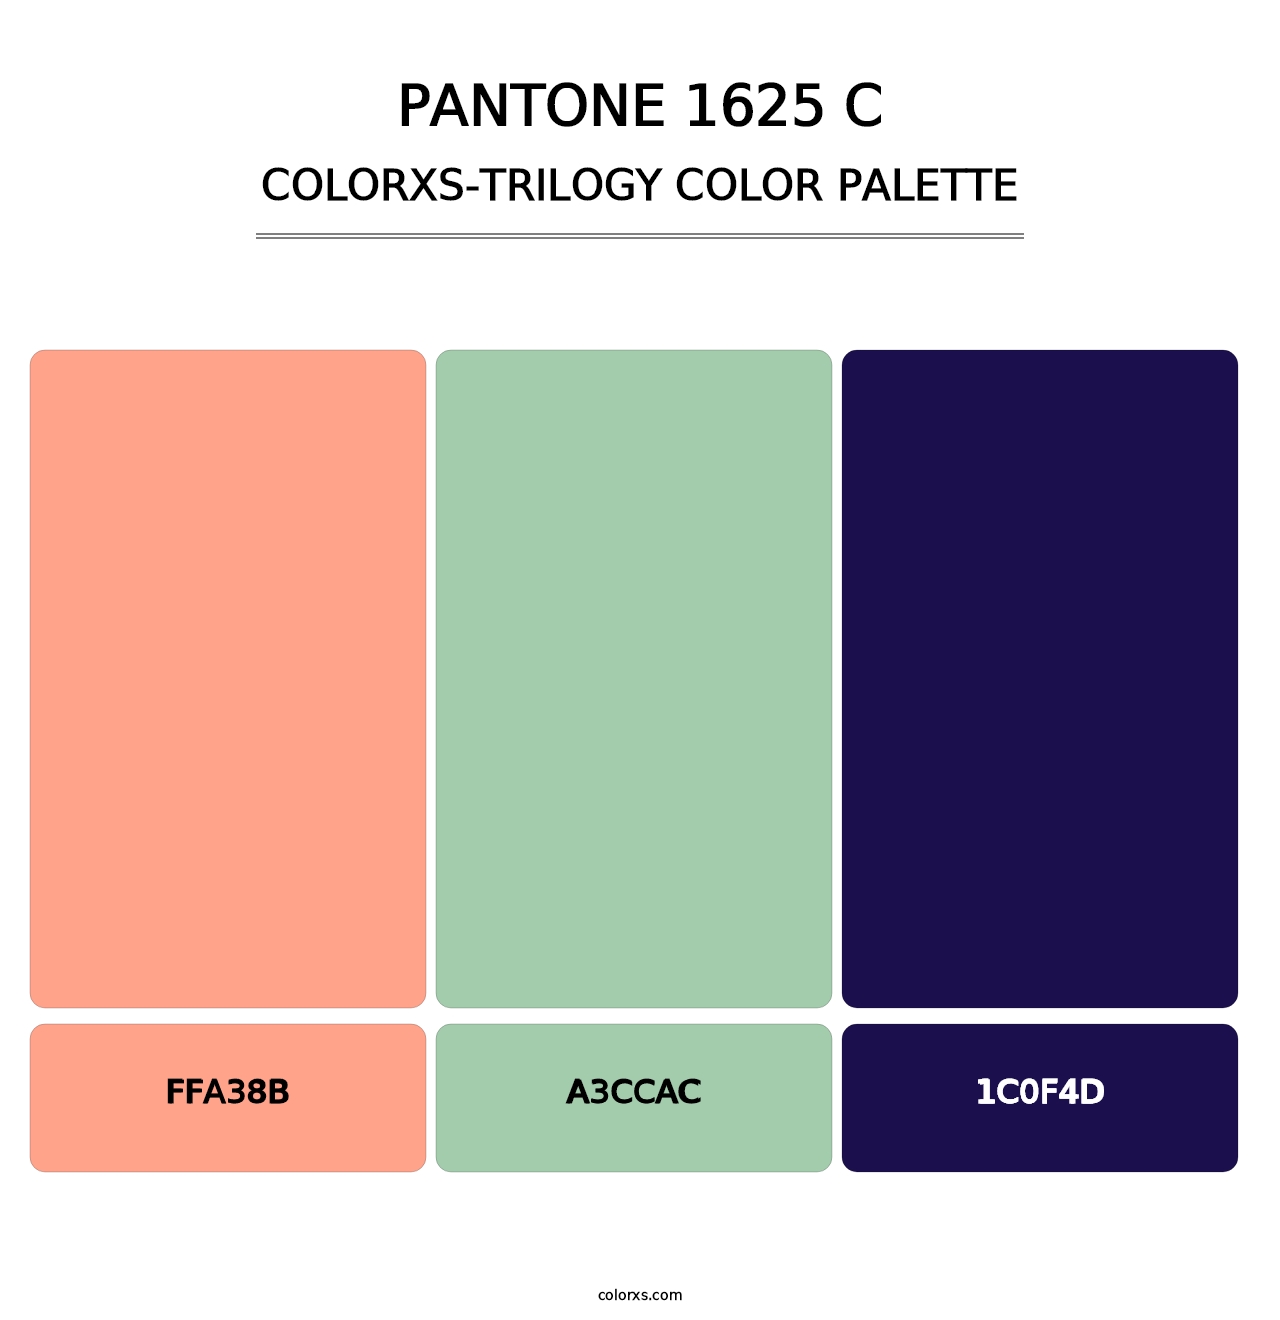 PANTONE 1625 C - Colorxs Trilogy Palette